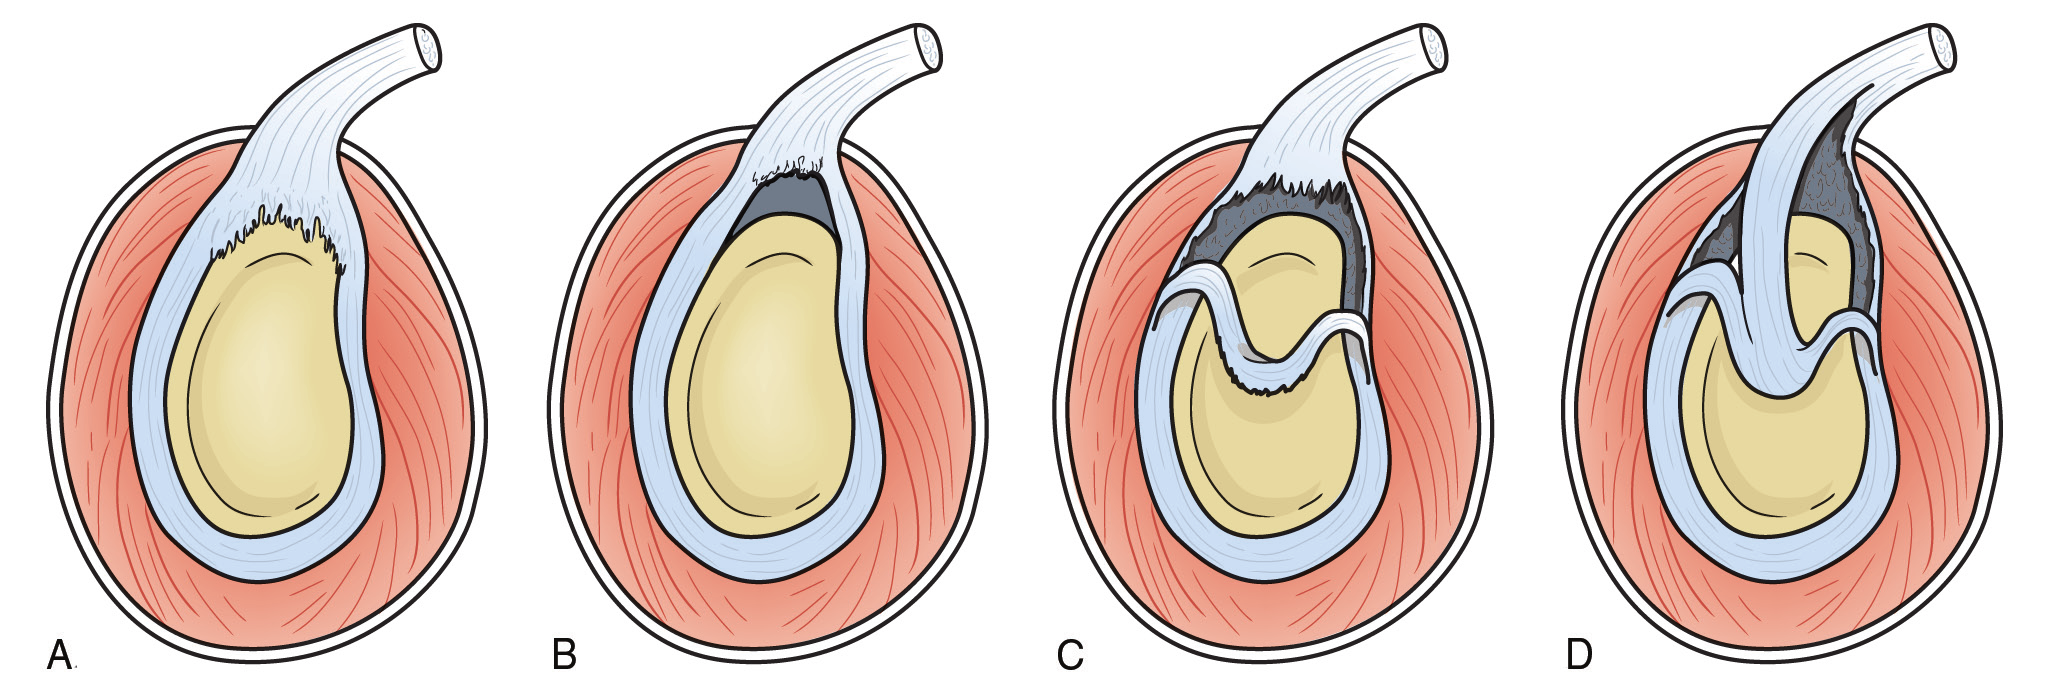 Capítulo 84: Desgarros anteroposteriores del reborde superior del rodete glenoideo y lesiones del tendón proximal del bíceps Figura 2 Ilustraciones que representan los cuatro tipos de desgarros